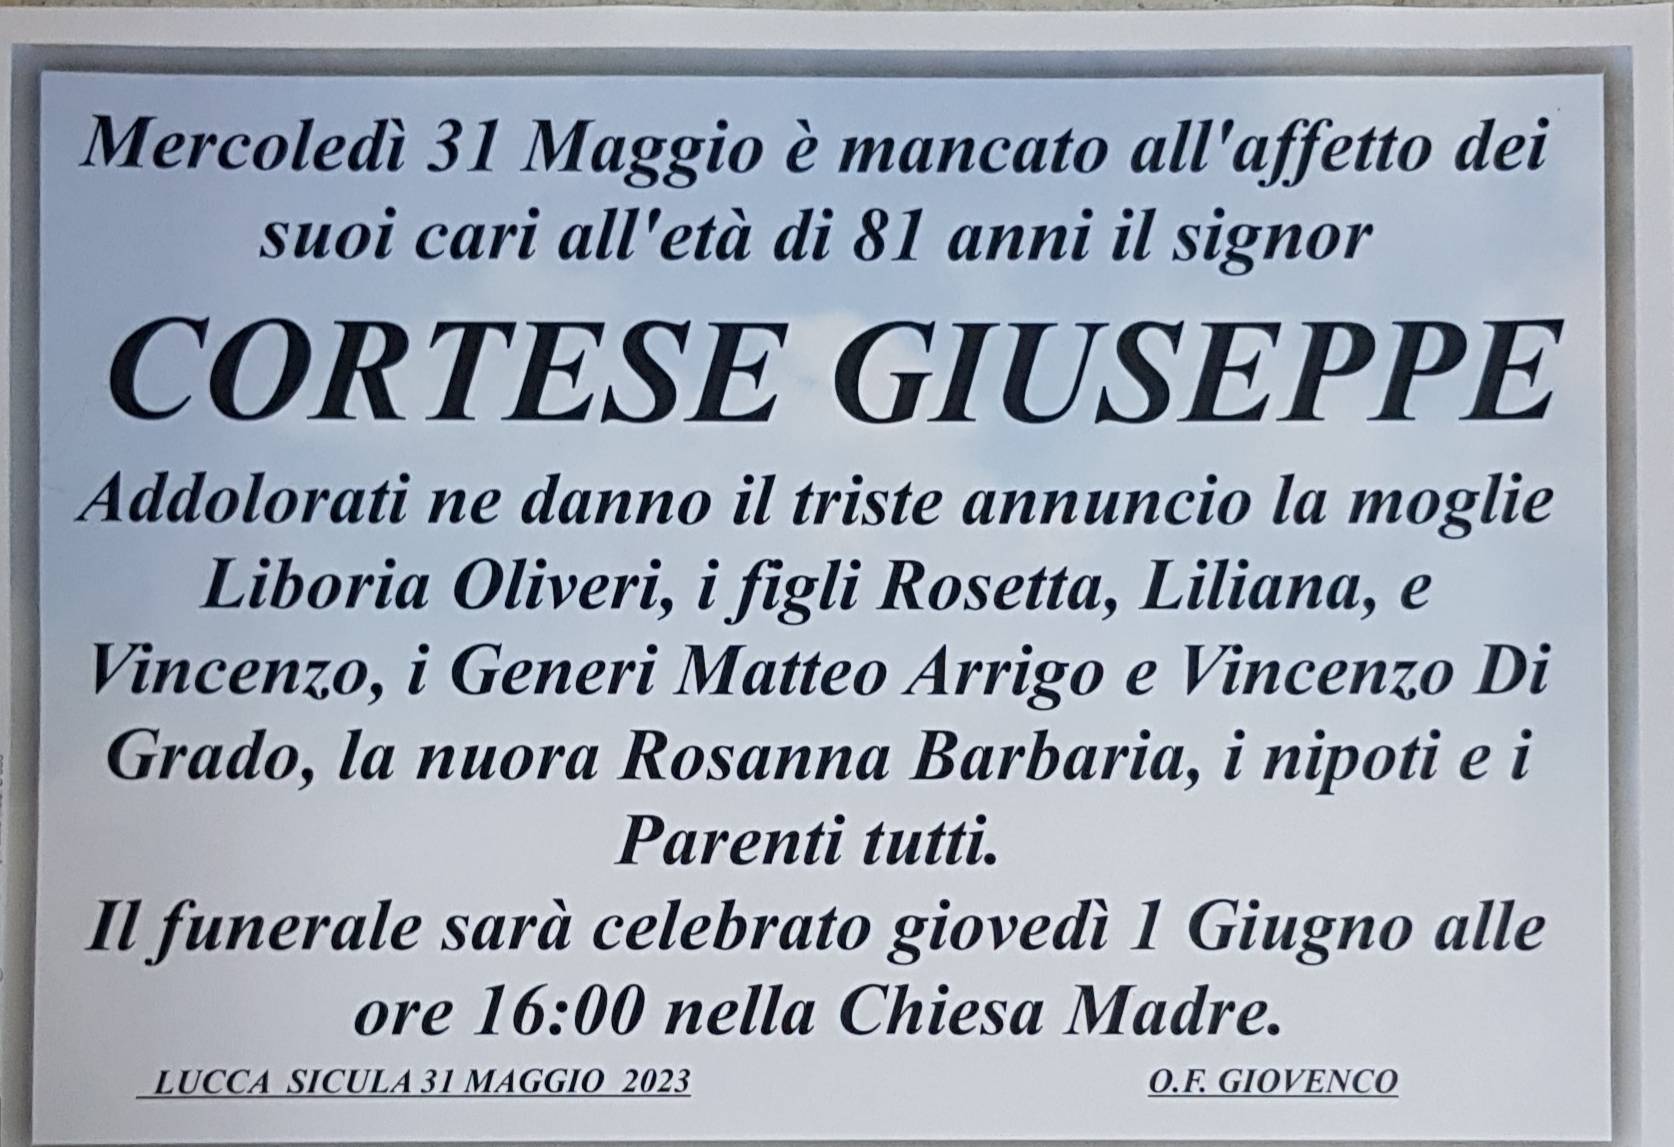 Giuseppe Cortese